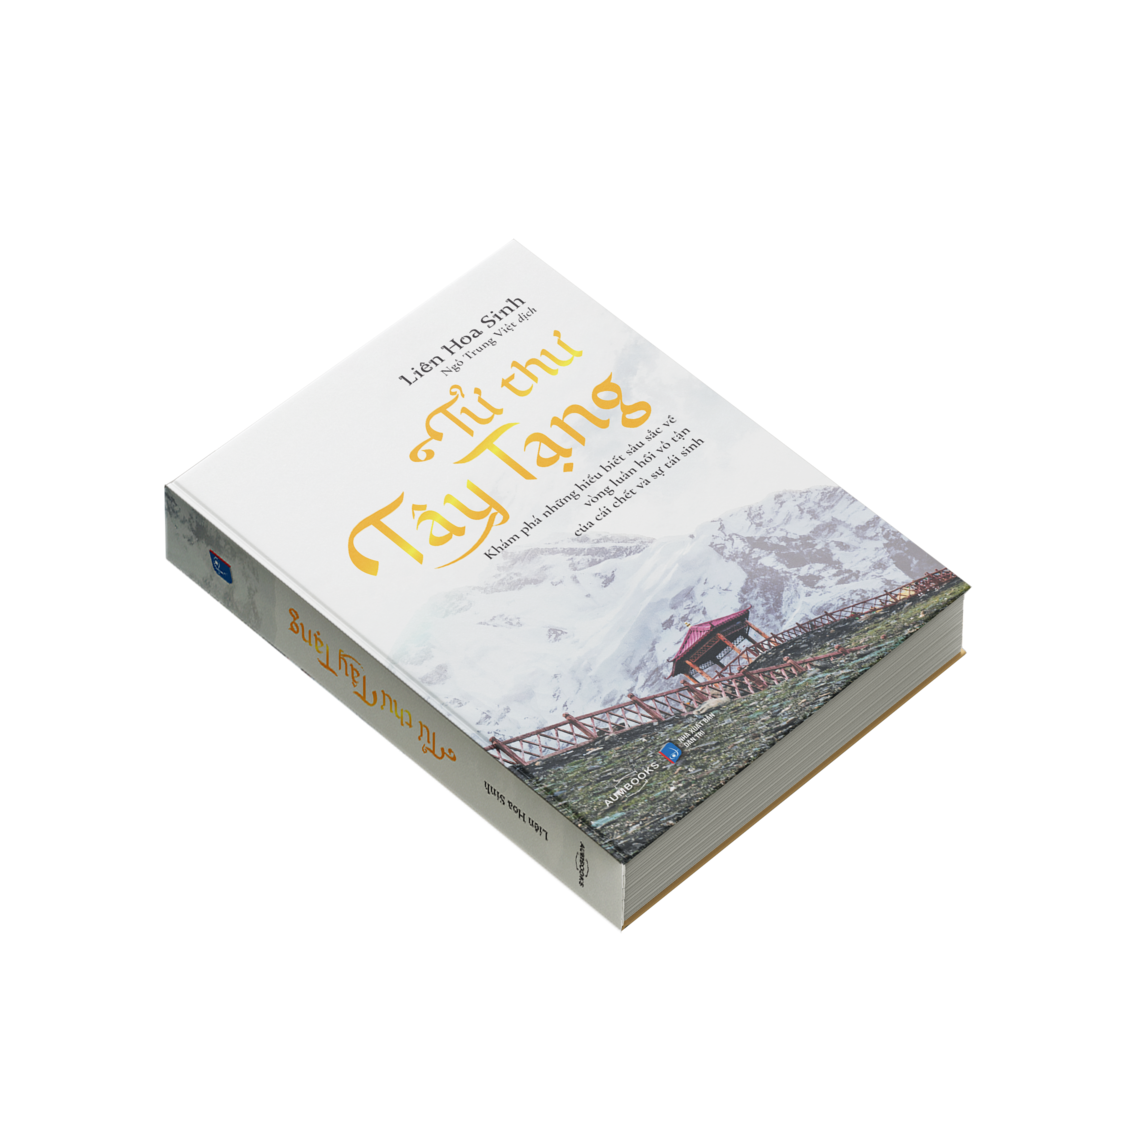 Sách Tử Thư Tây Tạng - Khám phá những hiểu biết sâu sắc về vòng luân hồi vô tận của cái chết và tái sinh - Hiệu Sách Genbooks, bìa mềm in màu